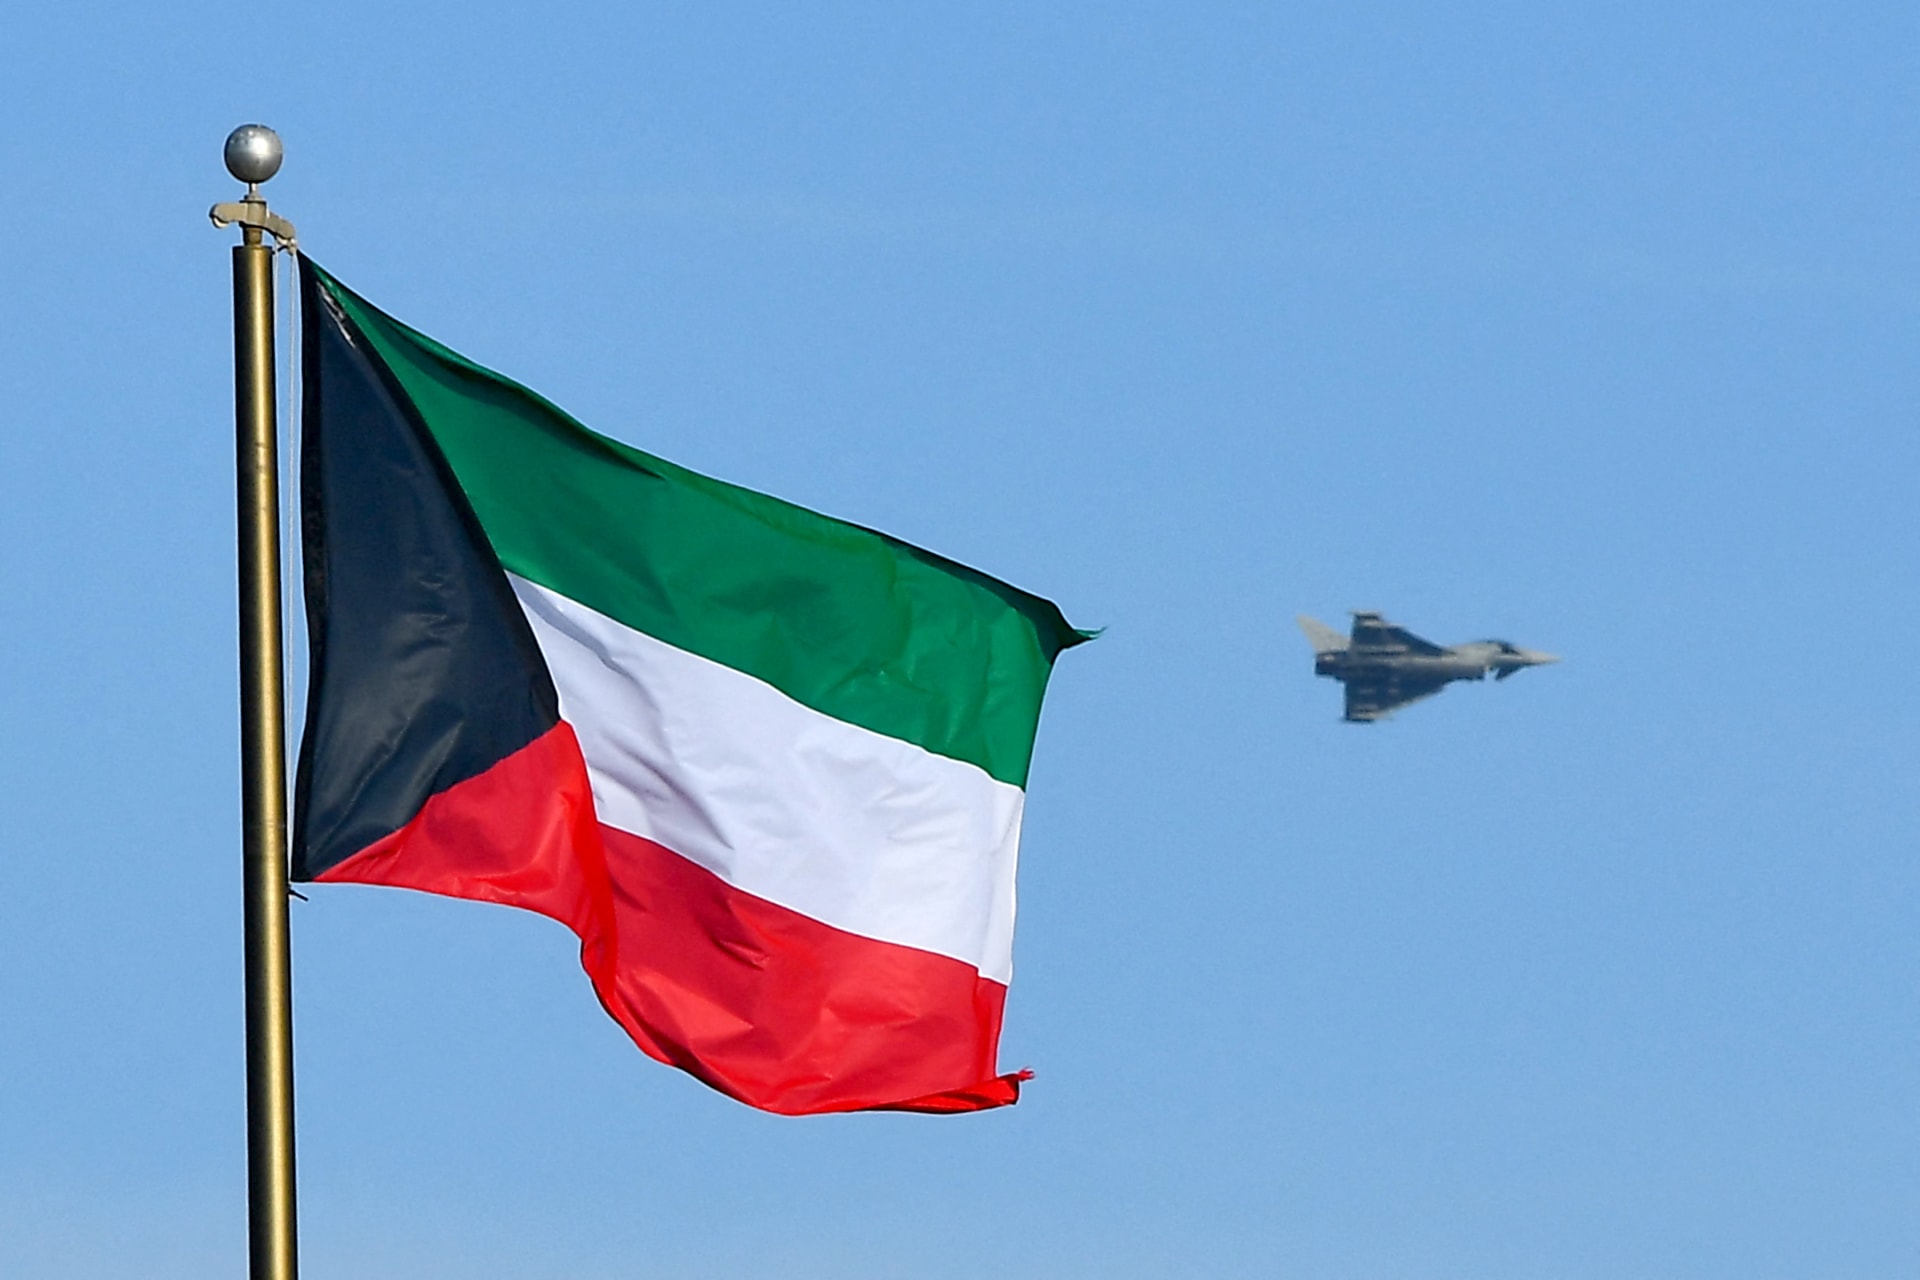 السفارة الأمريكية في الكويت تصدر تنبيهًا أمنيًا بعد تهديدات ضد القواعد العسكرية